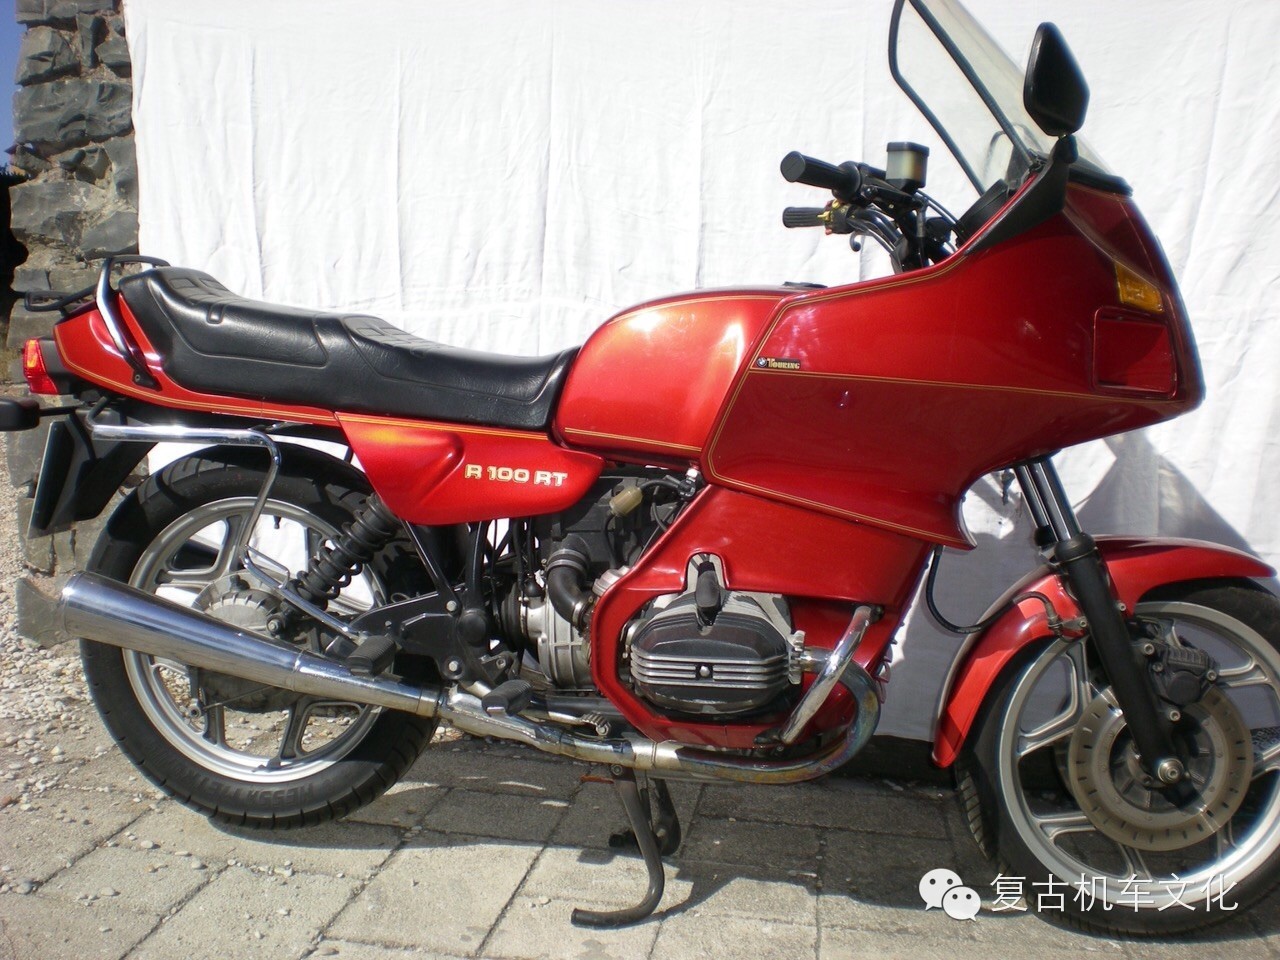 1989 宝马 R100RT摩托车改装欣赏